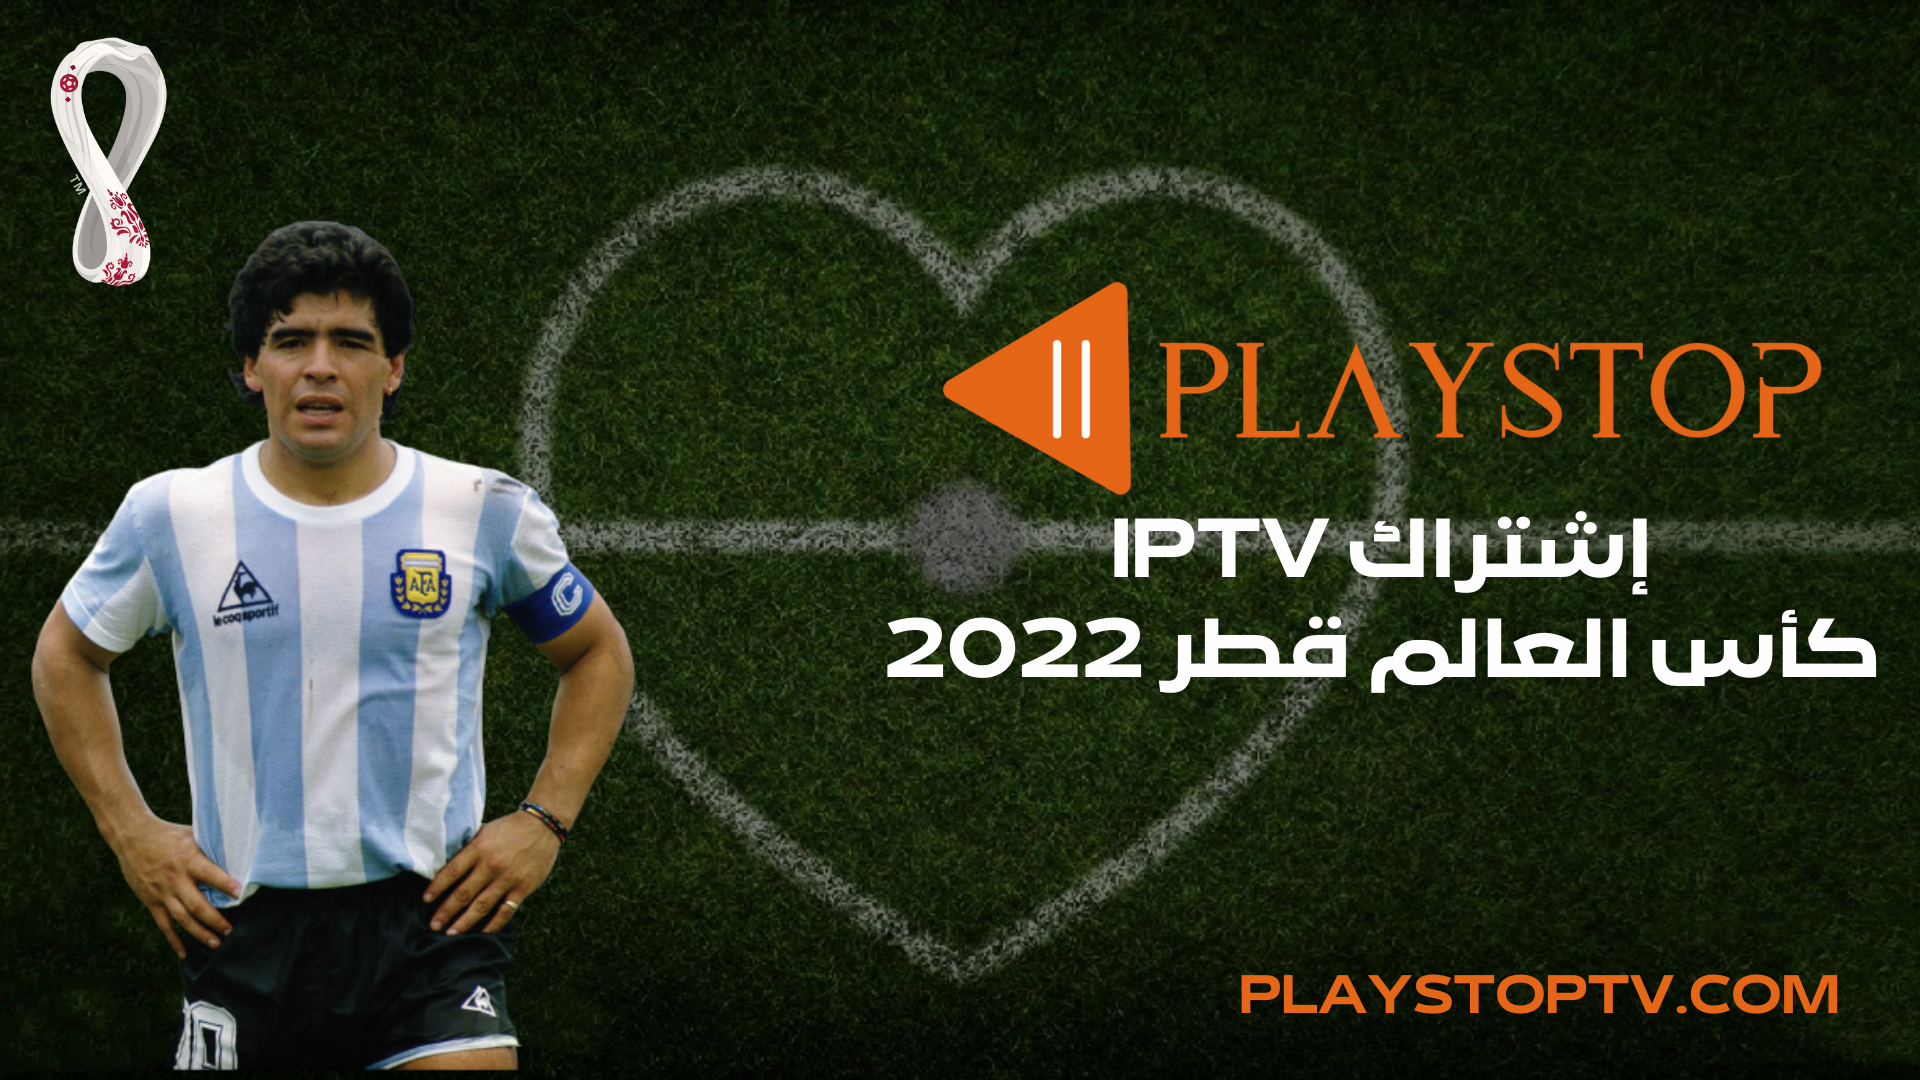 اشتراك كأس العالم 2022 IPTV "Keyword" "IPTV 4K حقيقي" "IPTV كأس العالم" "اشتراك iptv 50" "اشتراك شاومي IPTV" "أفضل اشتراك شاومي" "افضل اشتراك iptv"